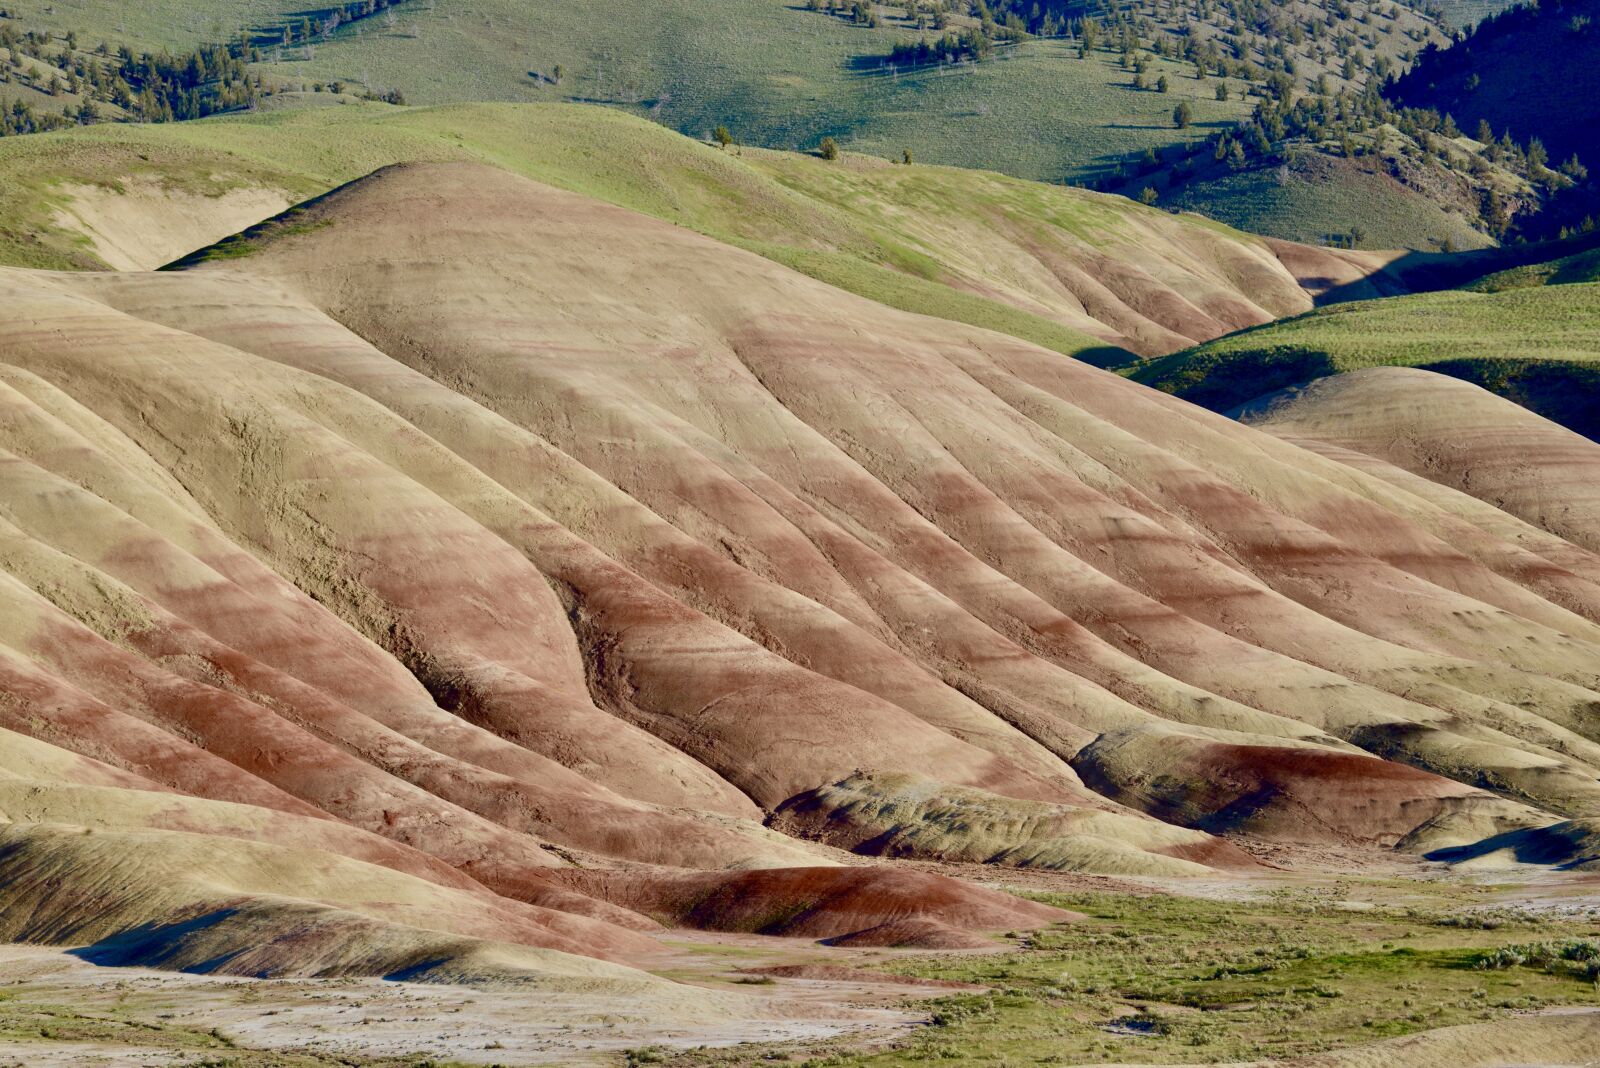 Nikon D600 sample photo. Painted hills, landscape, nature photography